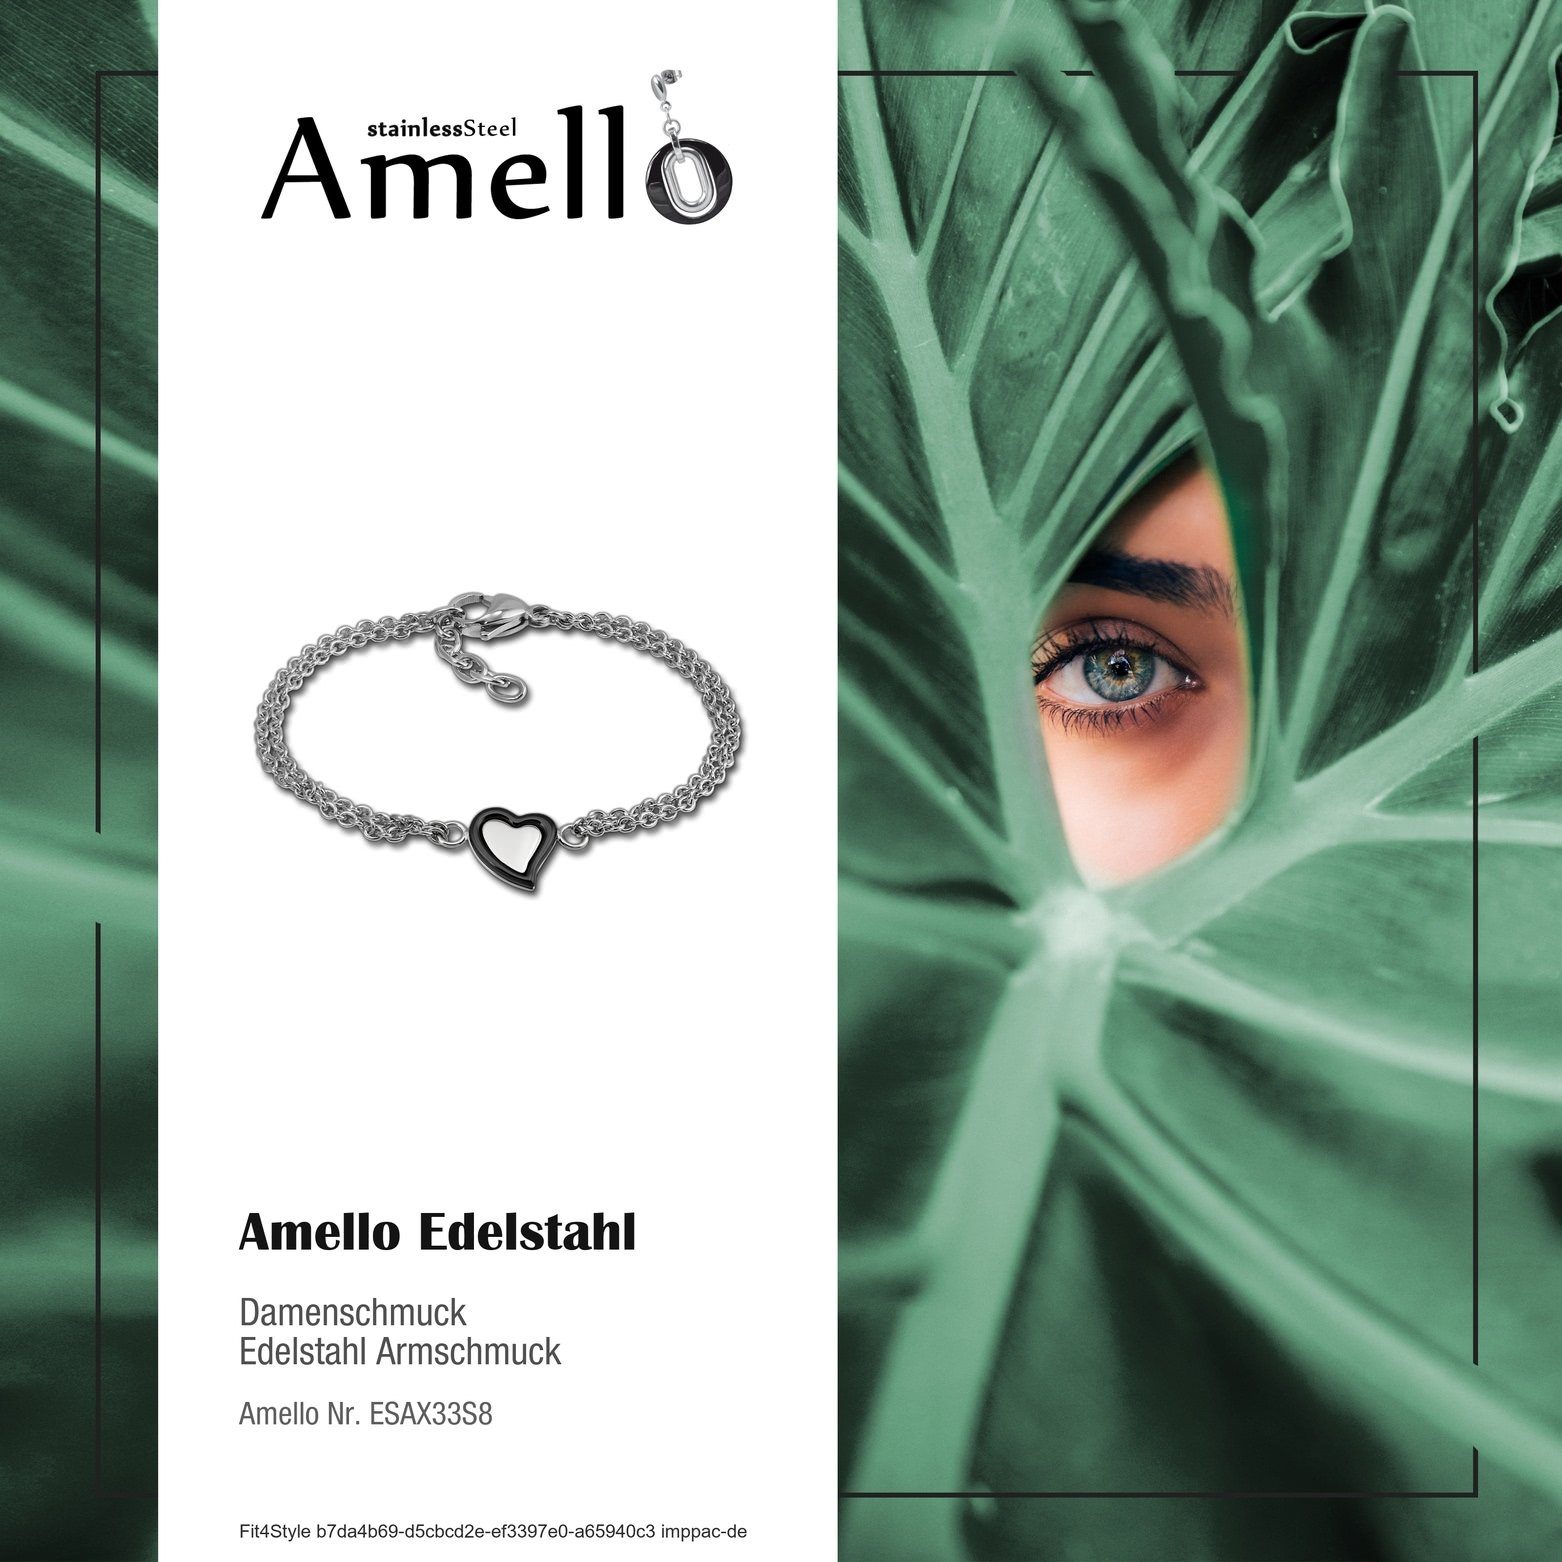 Steel) Edelstahl Armbänder Edelstahlarmband schwarz für Armband Amello (Armband), Amello (Stainless Damen Herz silber